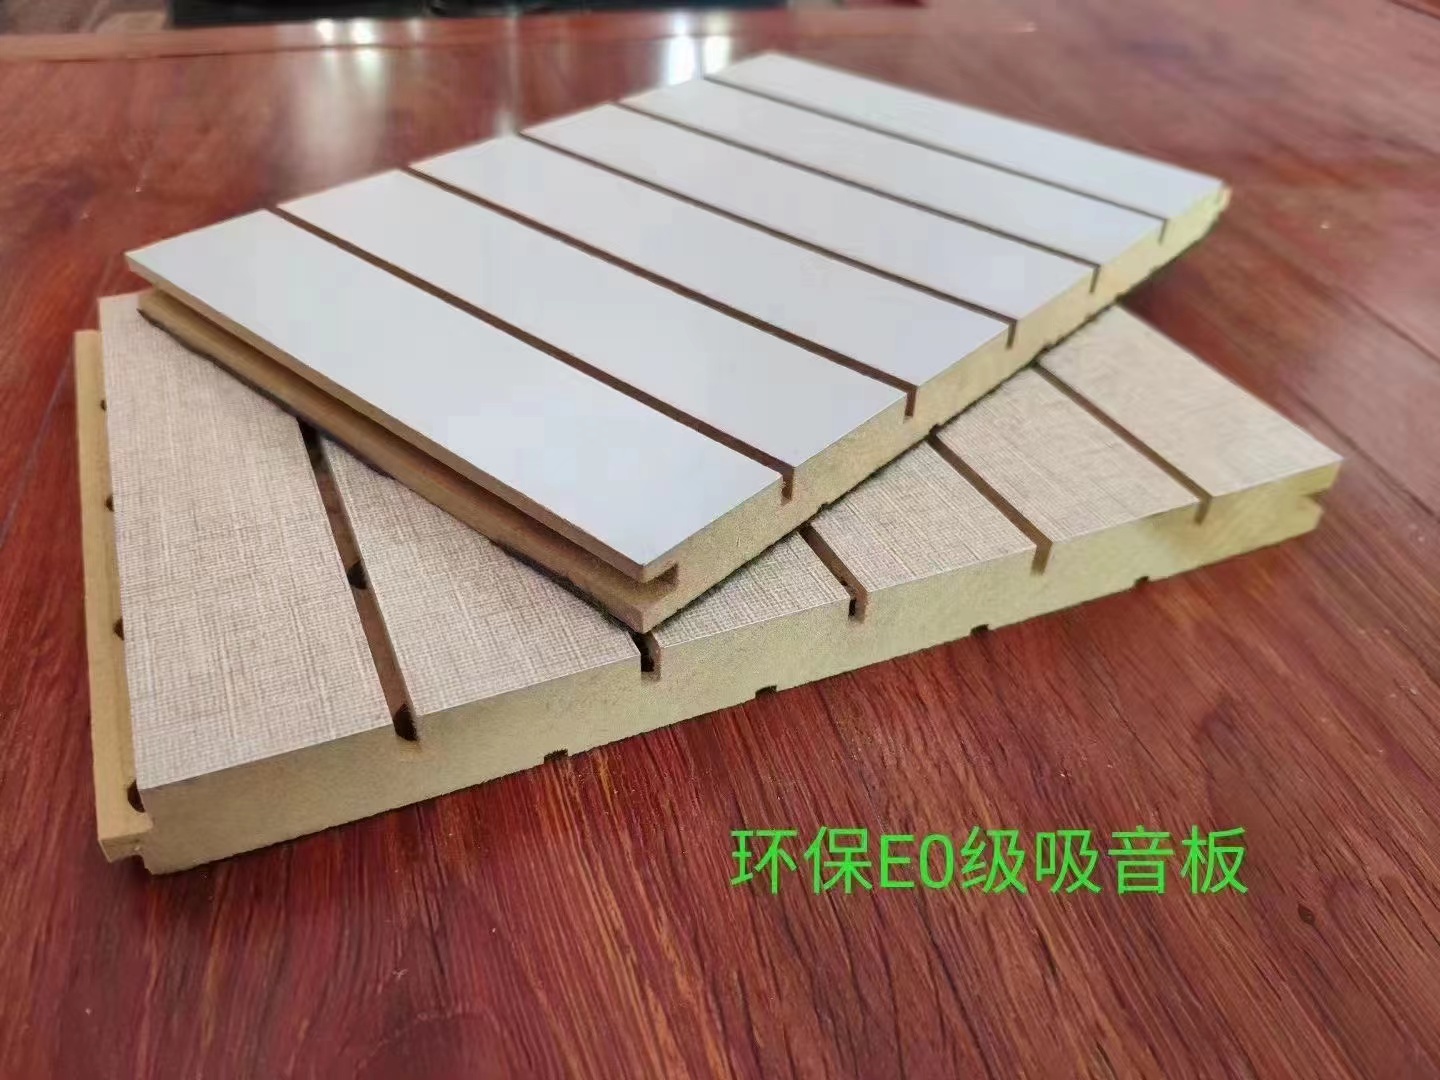 环保木质吸音板-环保EO级实木吸音板价格、促销价格、产地货源图片